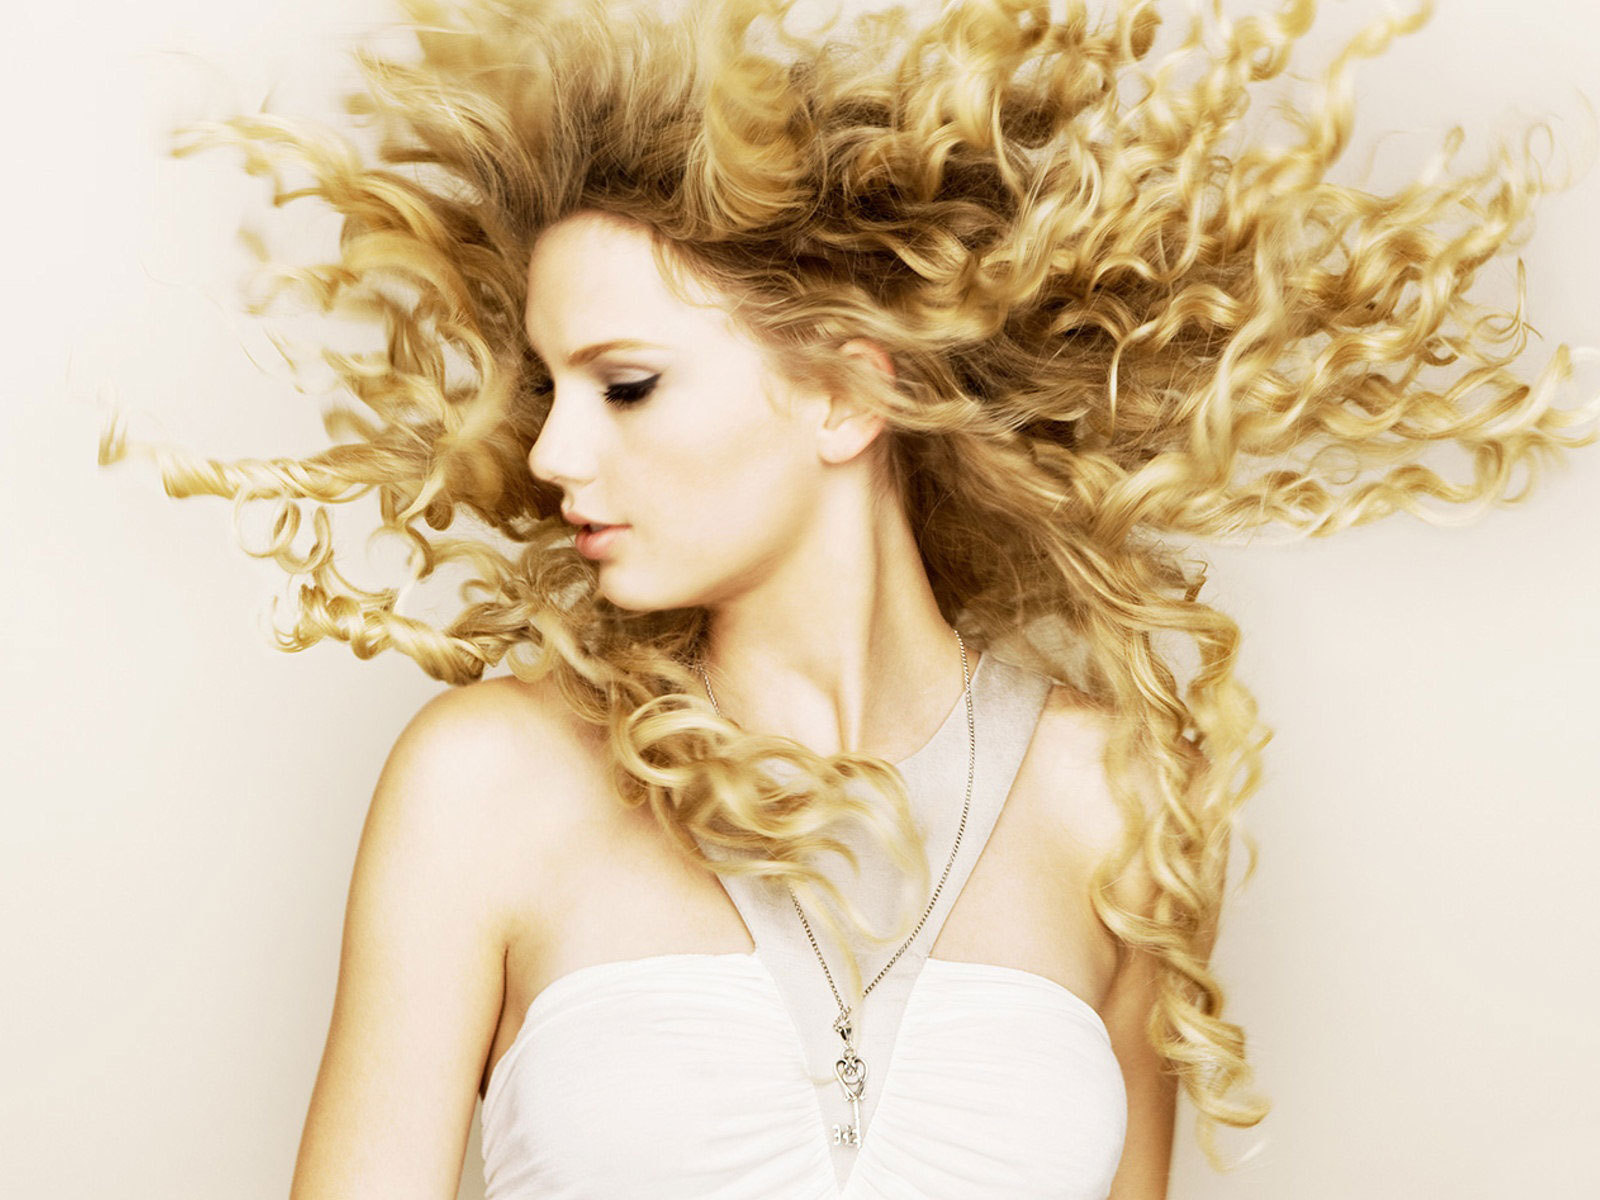 Fearless - Fearless (Taylor Swift album) Wallpaper (17904596) - Fanpop